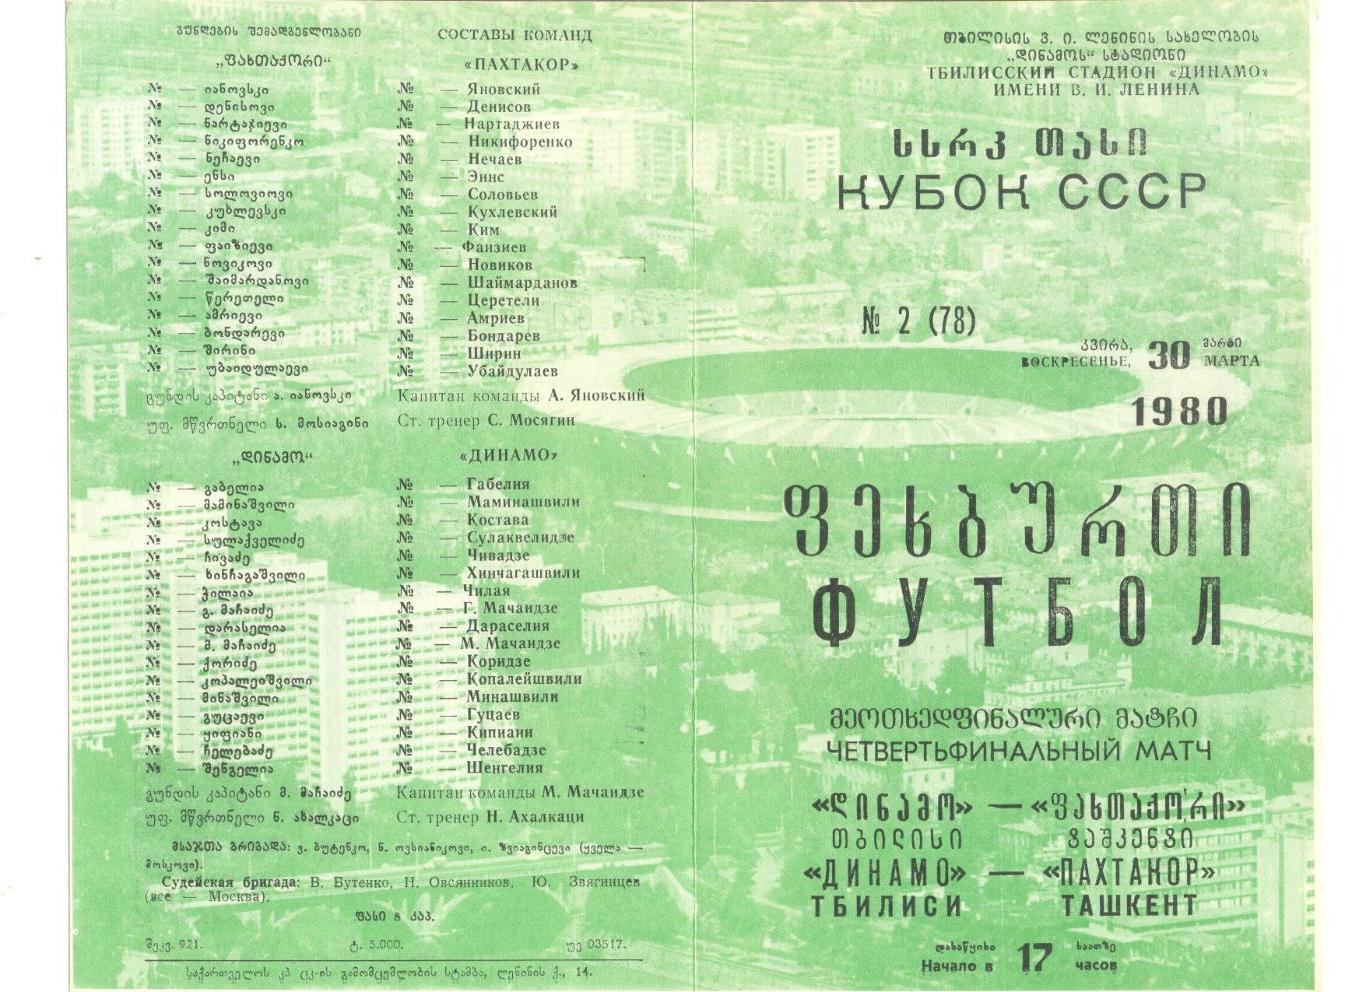 Динамо Тбилиси - Пахтакор Ташкент 30.03.1980 г. Кубок СССР 1/4.